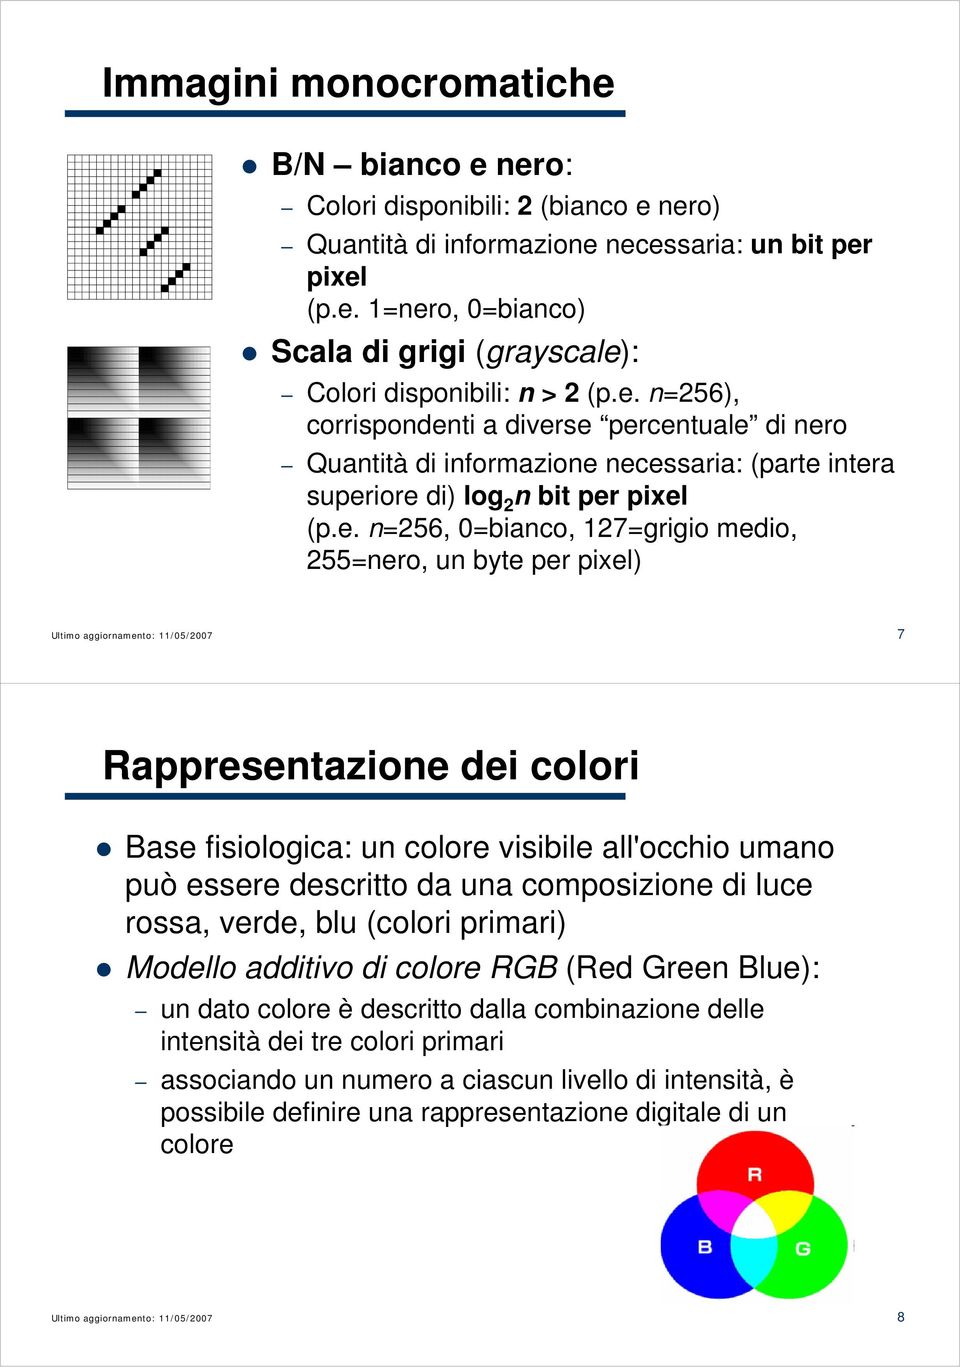 byte per pixel) 7 Rappresentazione dei colori Base fisiologica: un colore visibile all'occhio umano può essere descritto da una composizione di luce rossa, verde, blu (colori primari) Modello